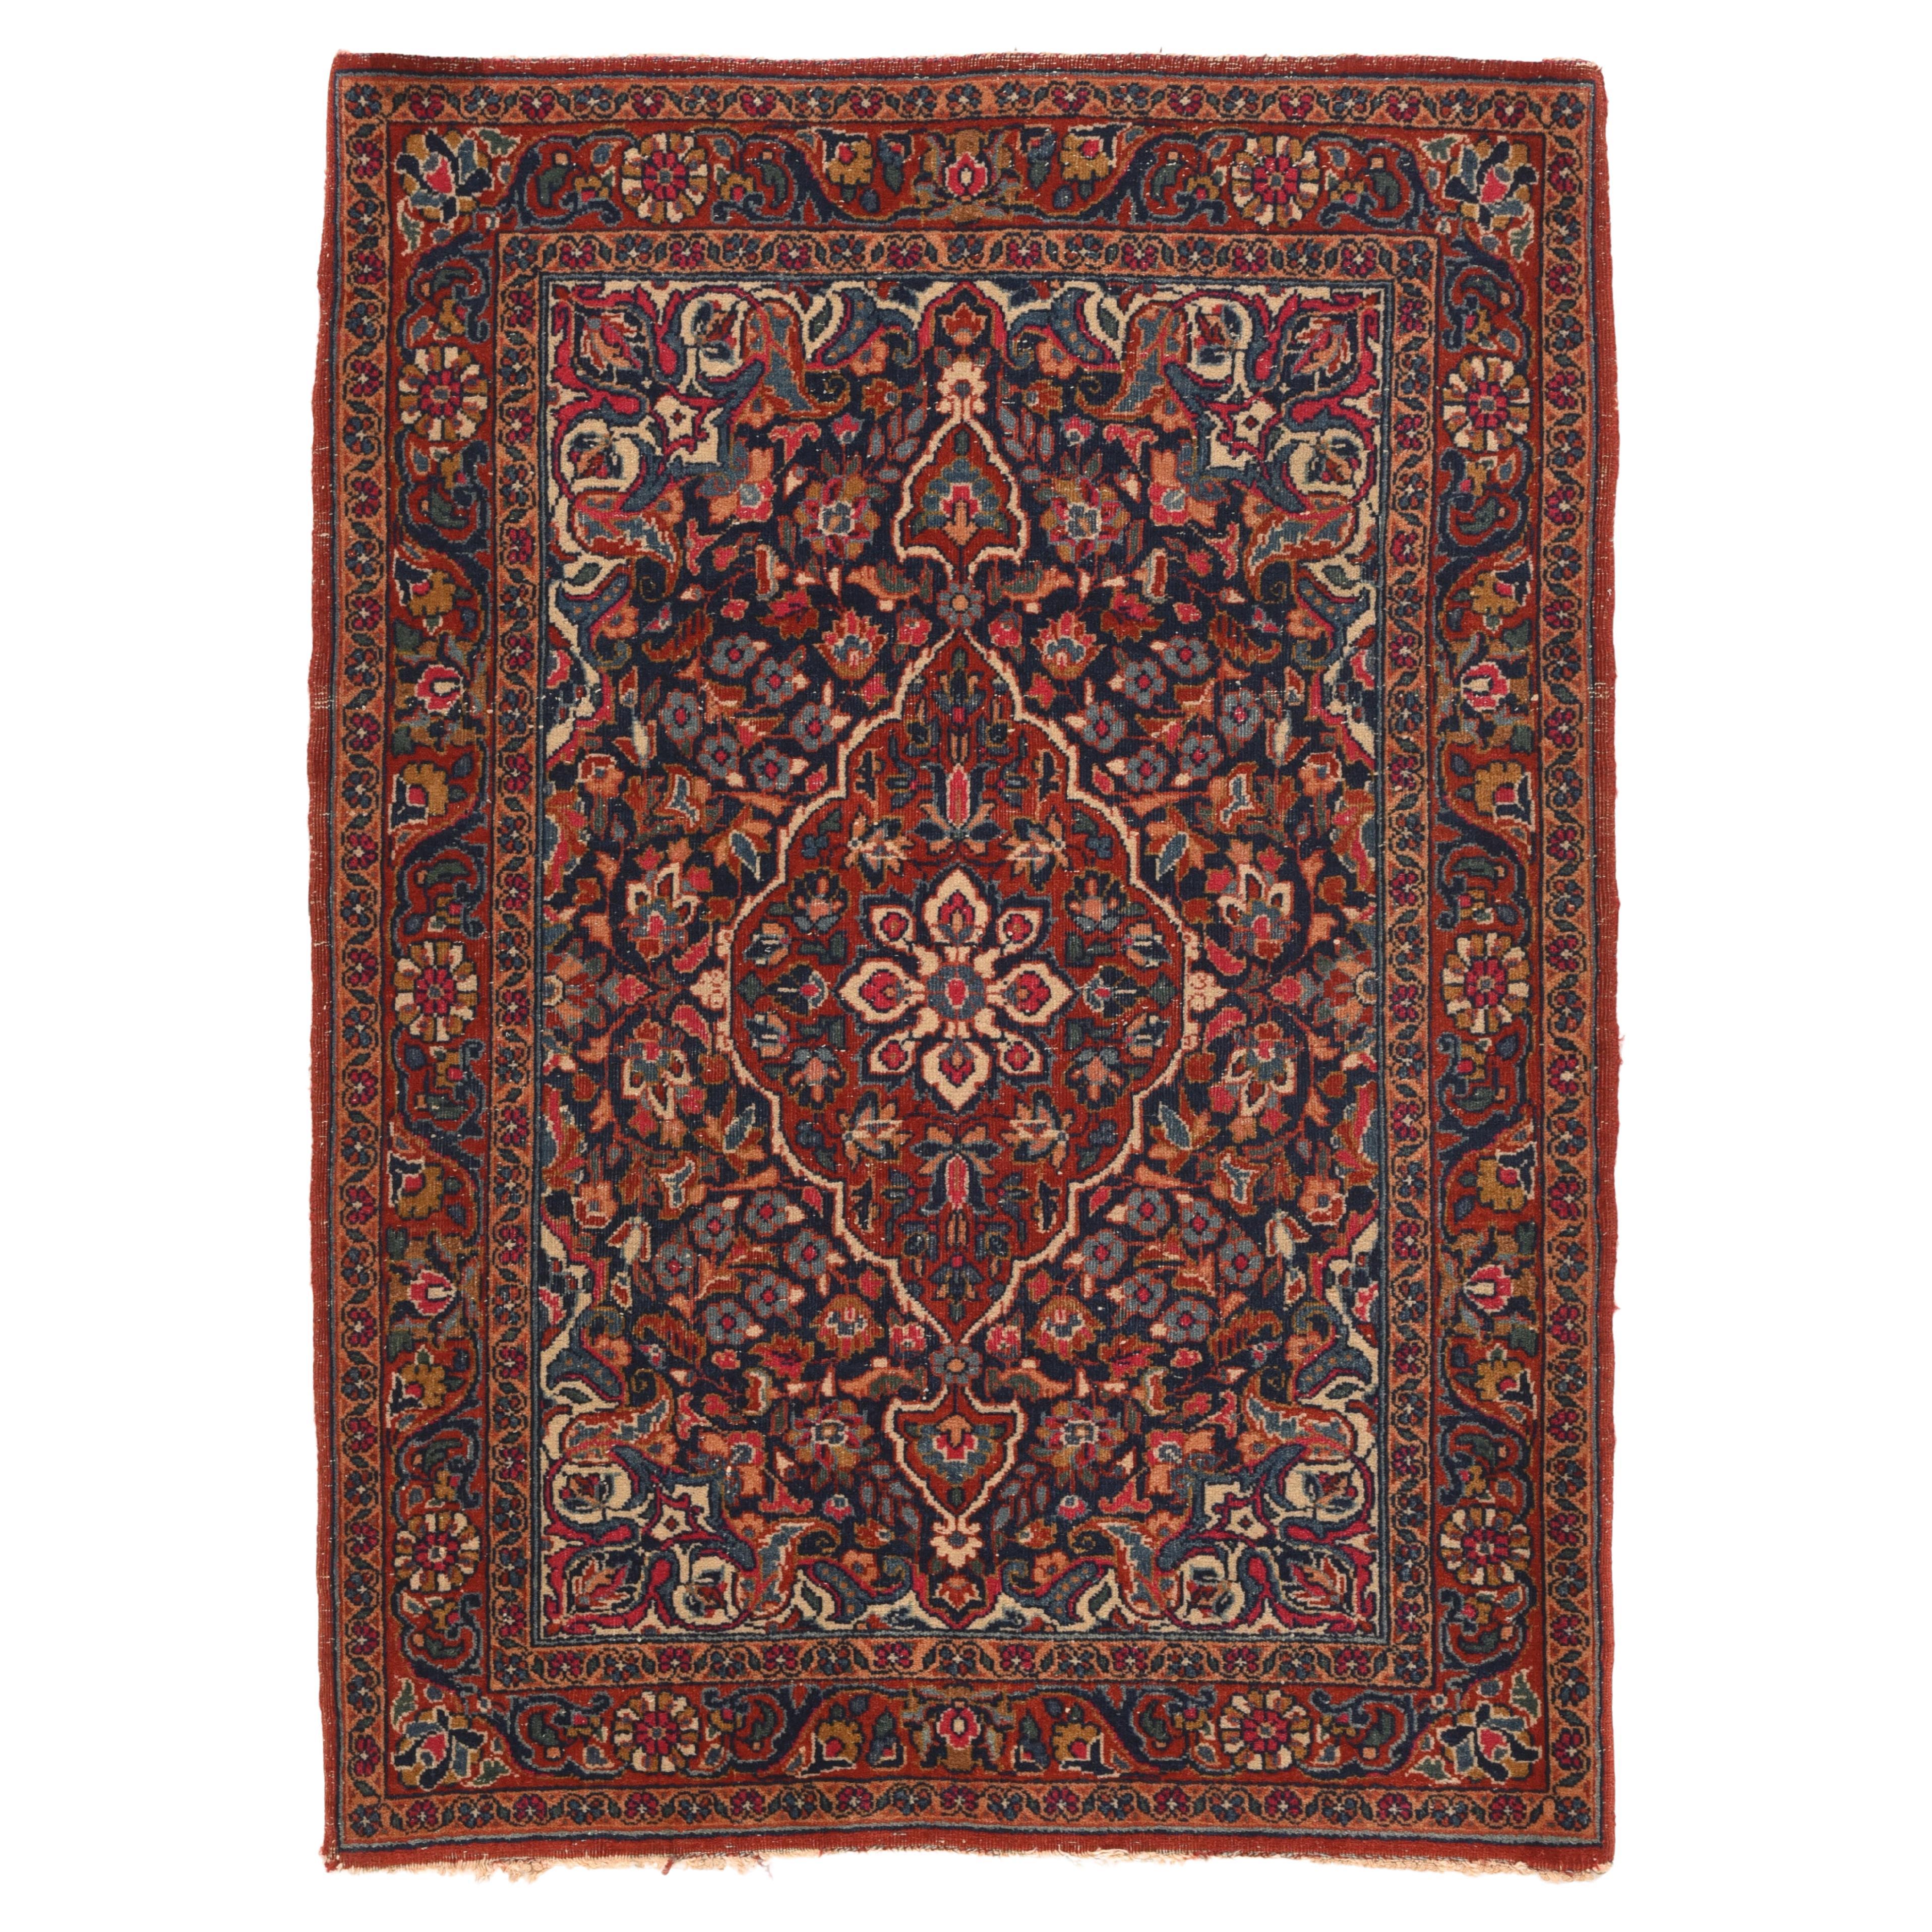 Persischer Kashan-Teppich im Vintage-Stil 2'2'' x 2'11''